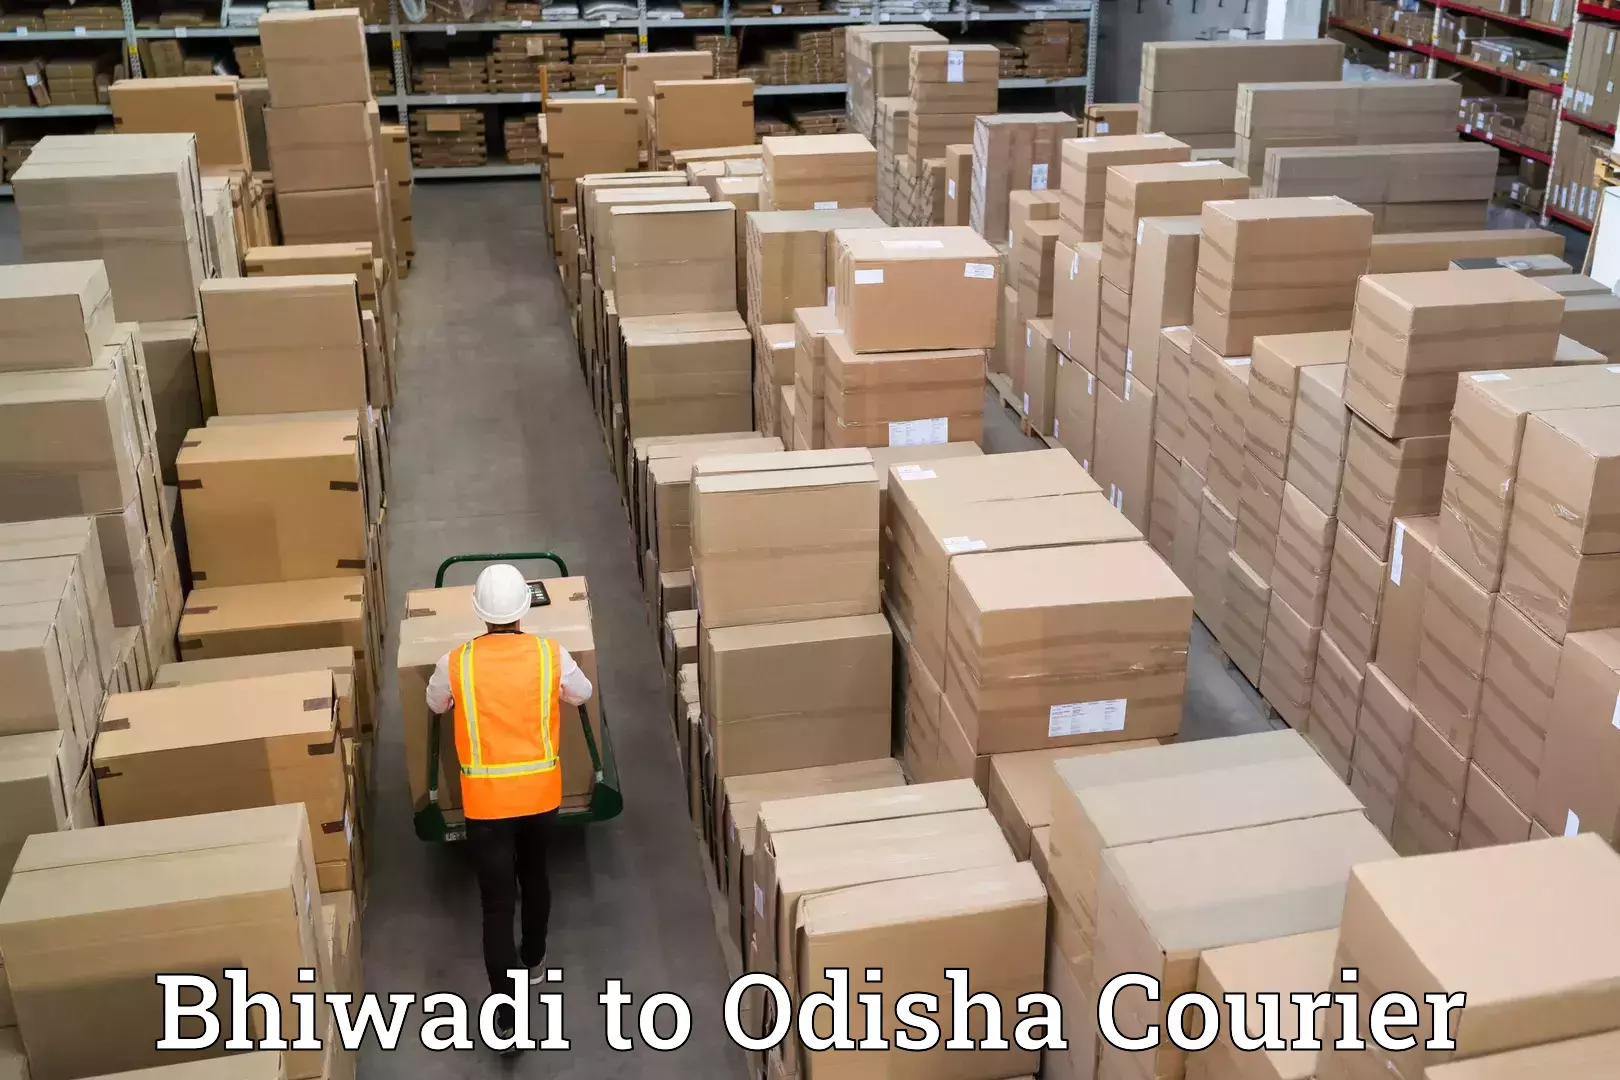 Household moving experts Bhiwadi to Odisha